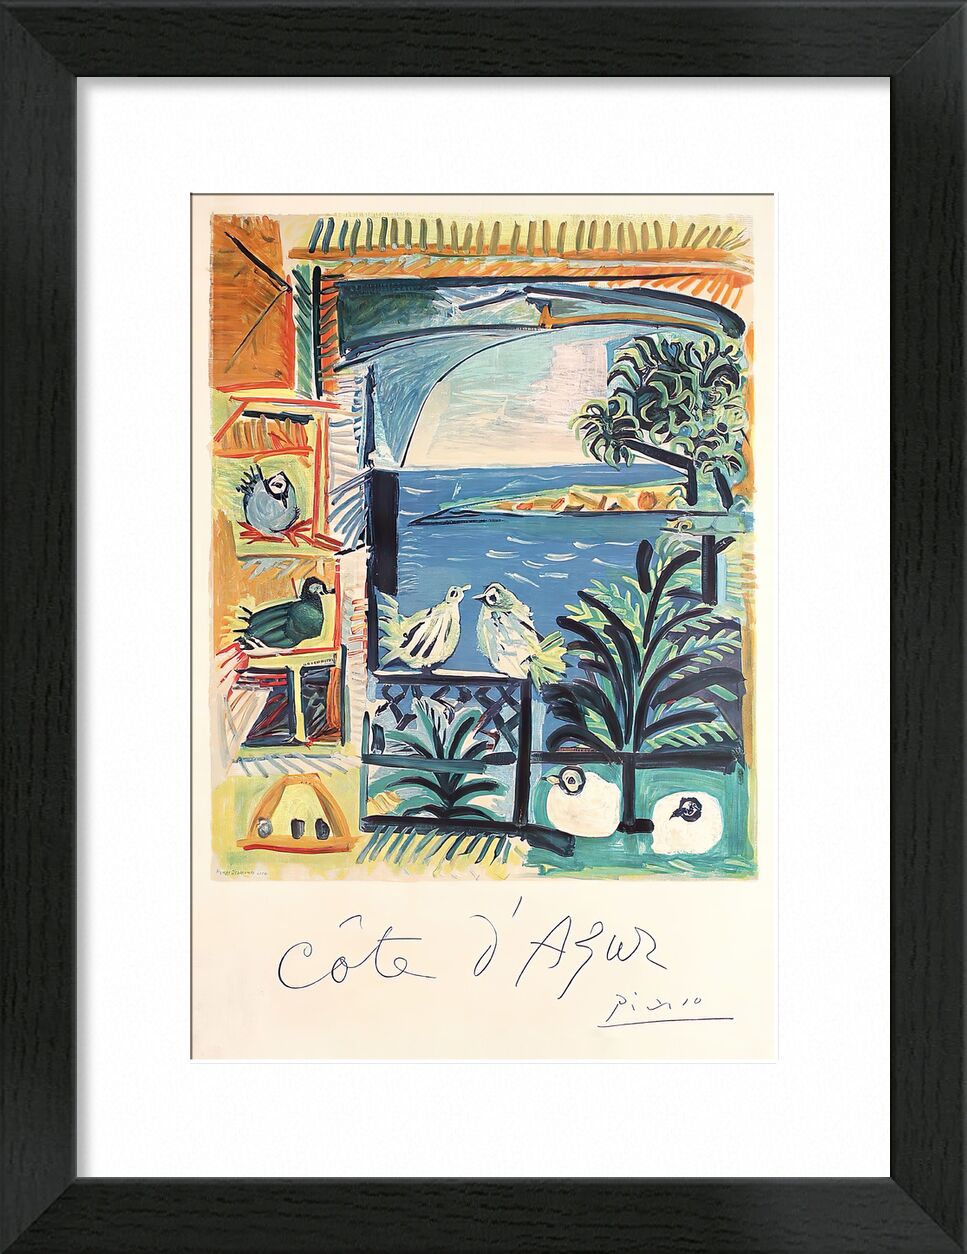 Côte d'Azur - The studio of Velazquez and his Pigeons - Picasso von Bildende Kunst, Prodi Art, Malwerkstatt, Frankreich, Französische Riviera, Tauben, Picasso